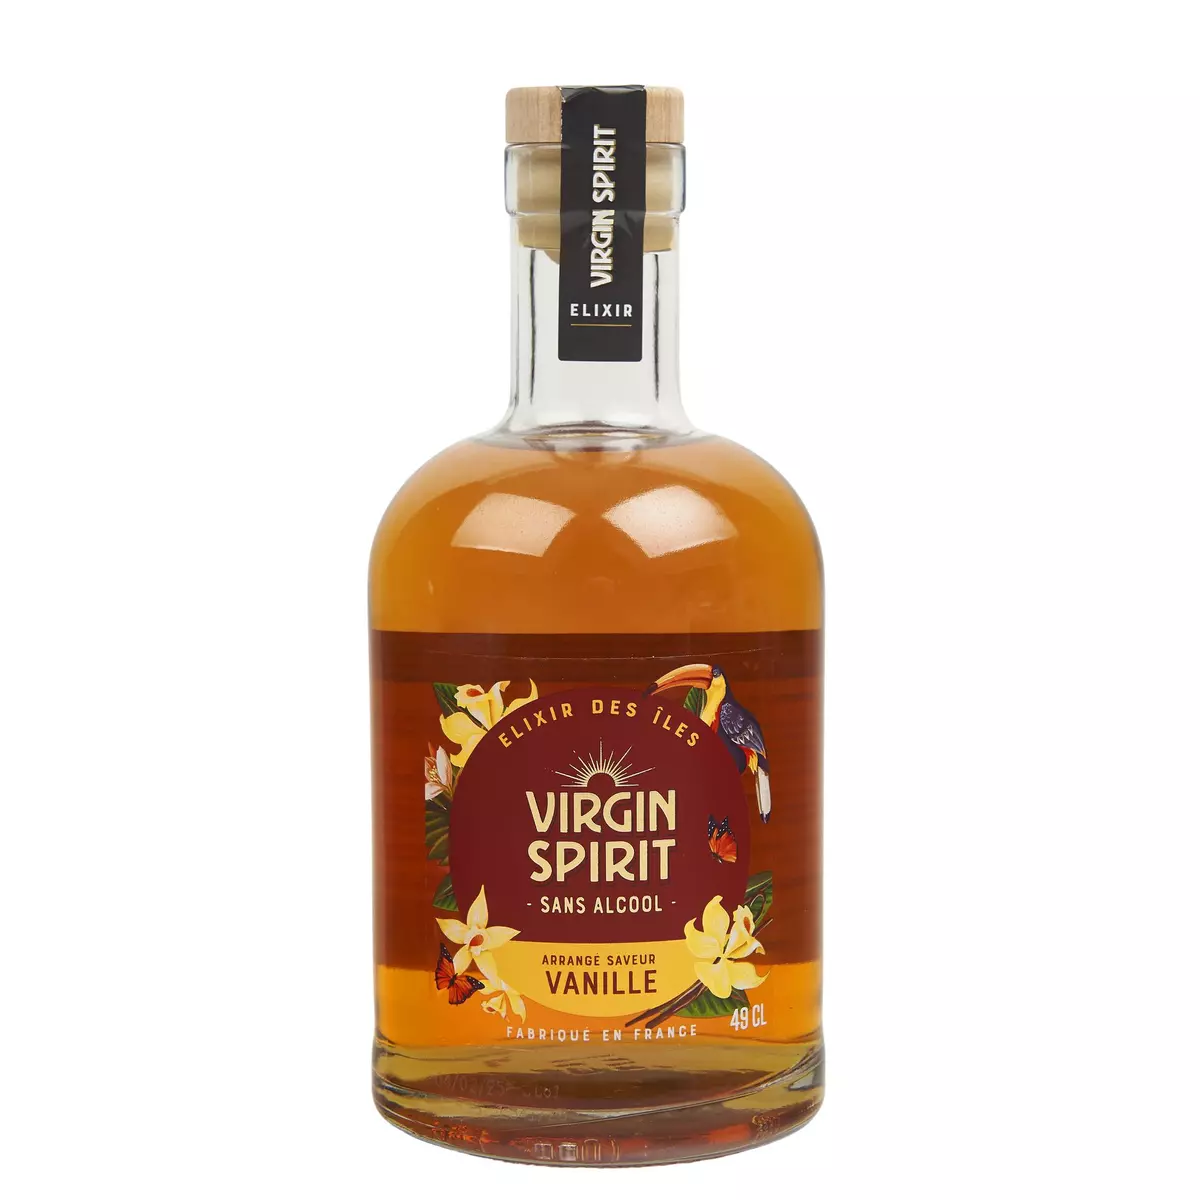 VIRGIN SPIRIT Elixir des îles arrangé saveur vanille 49cl